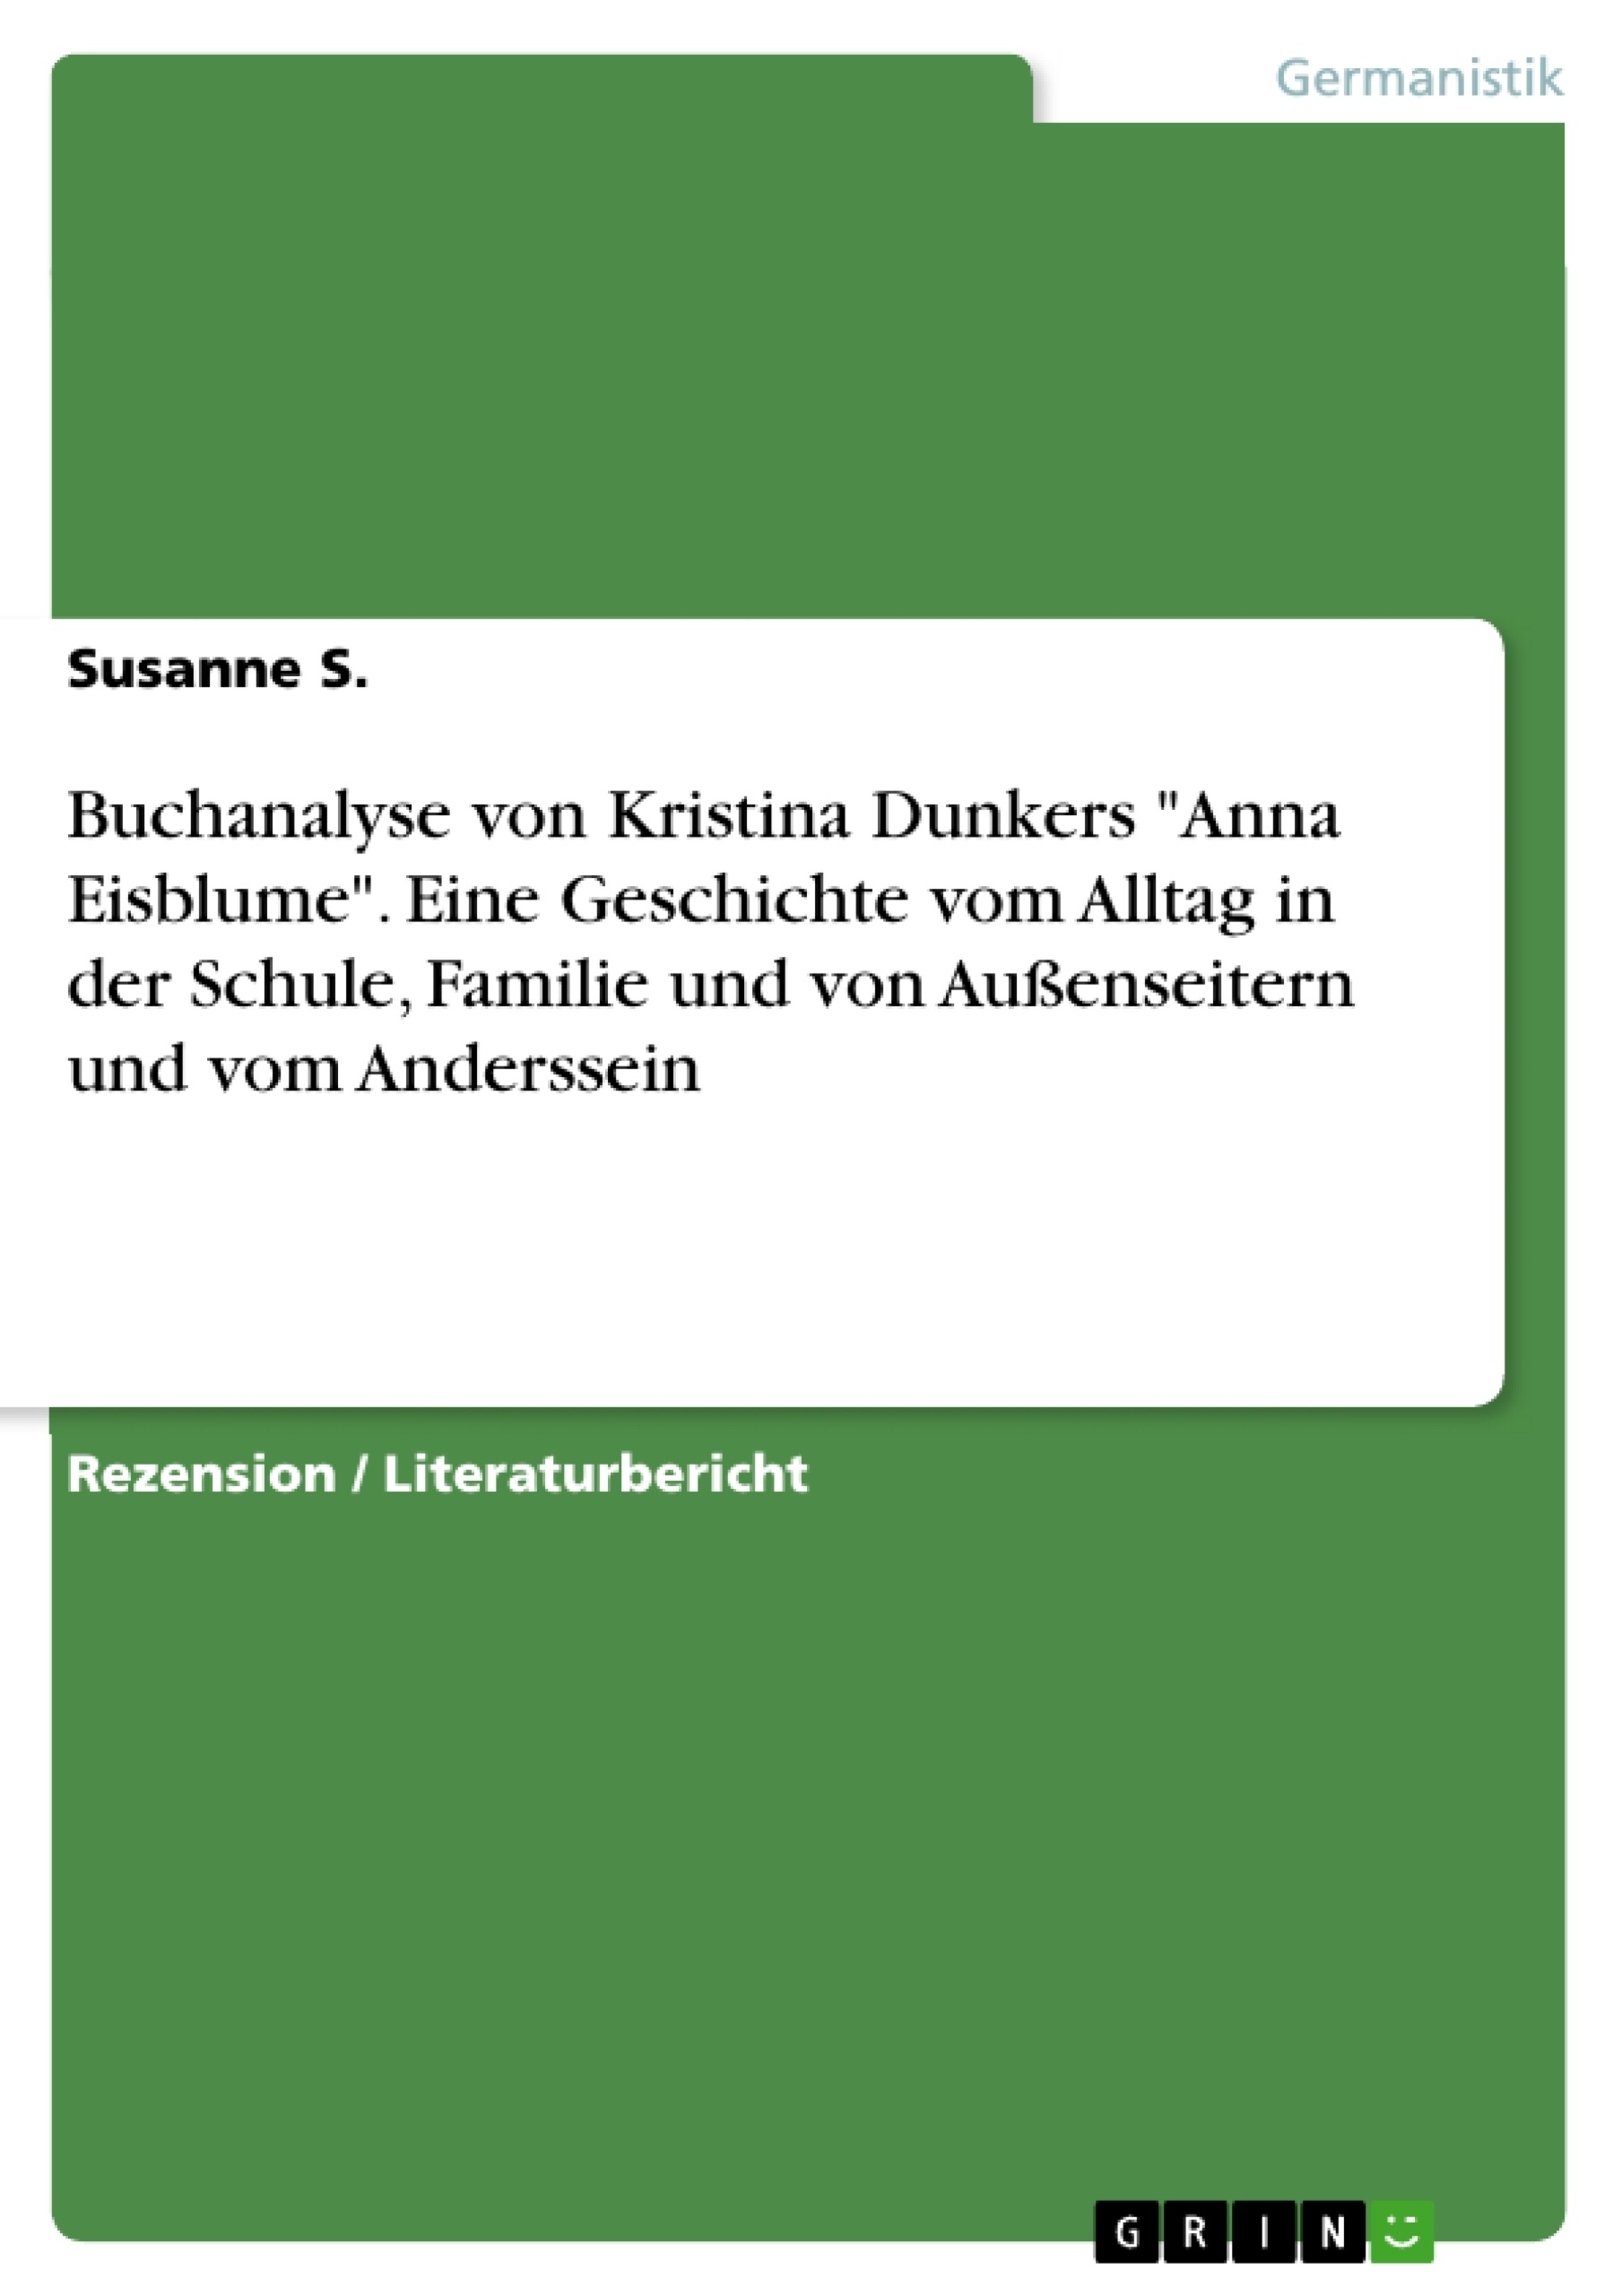 Título: Buchanalyse von Kristina Dunkers "Anna Eisblume". Eine Geschichte vom Alltag in der Schule, Familie und von Außenseitern und vom Anderssein